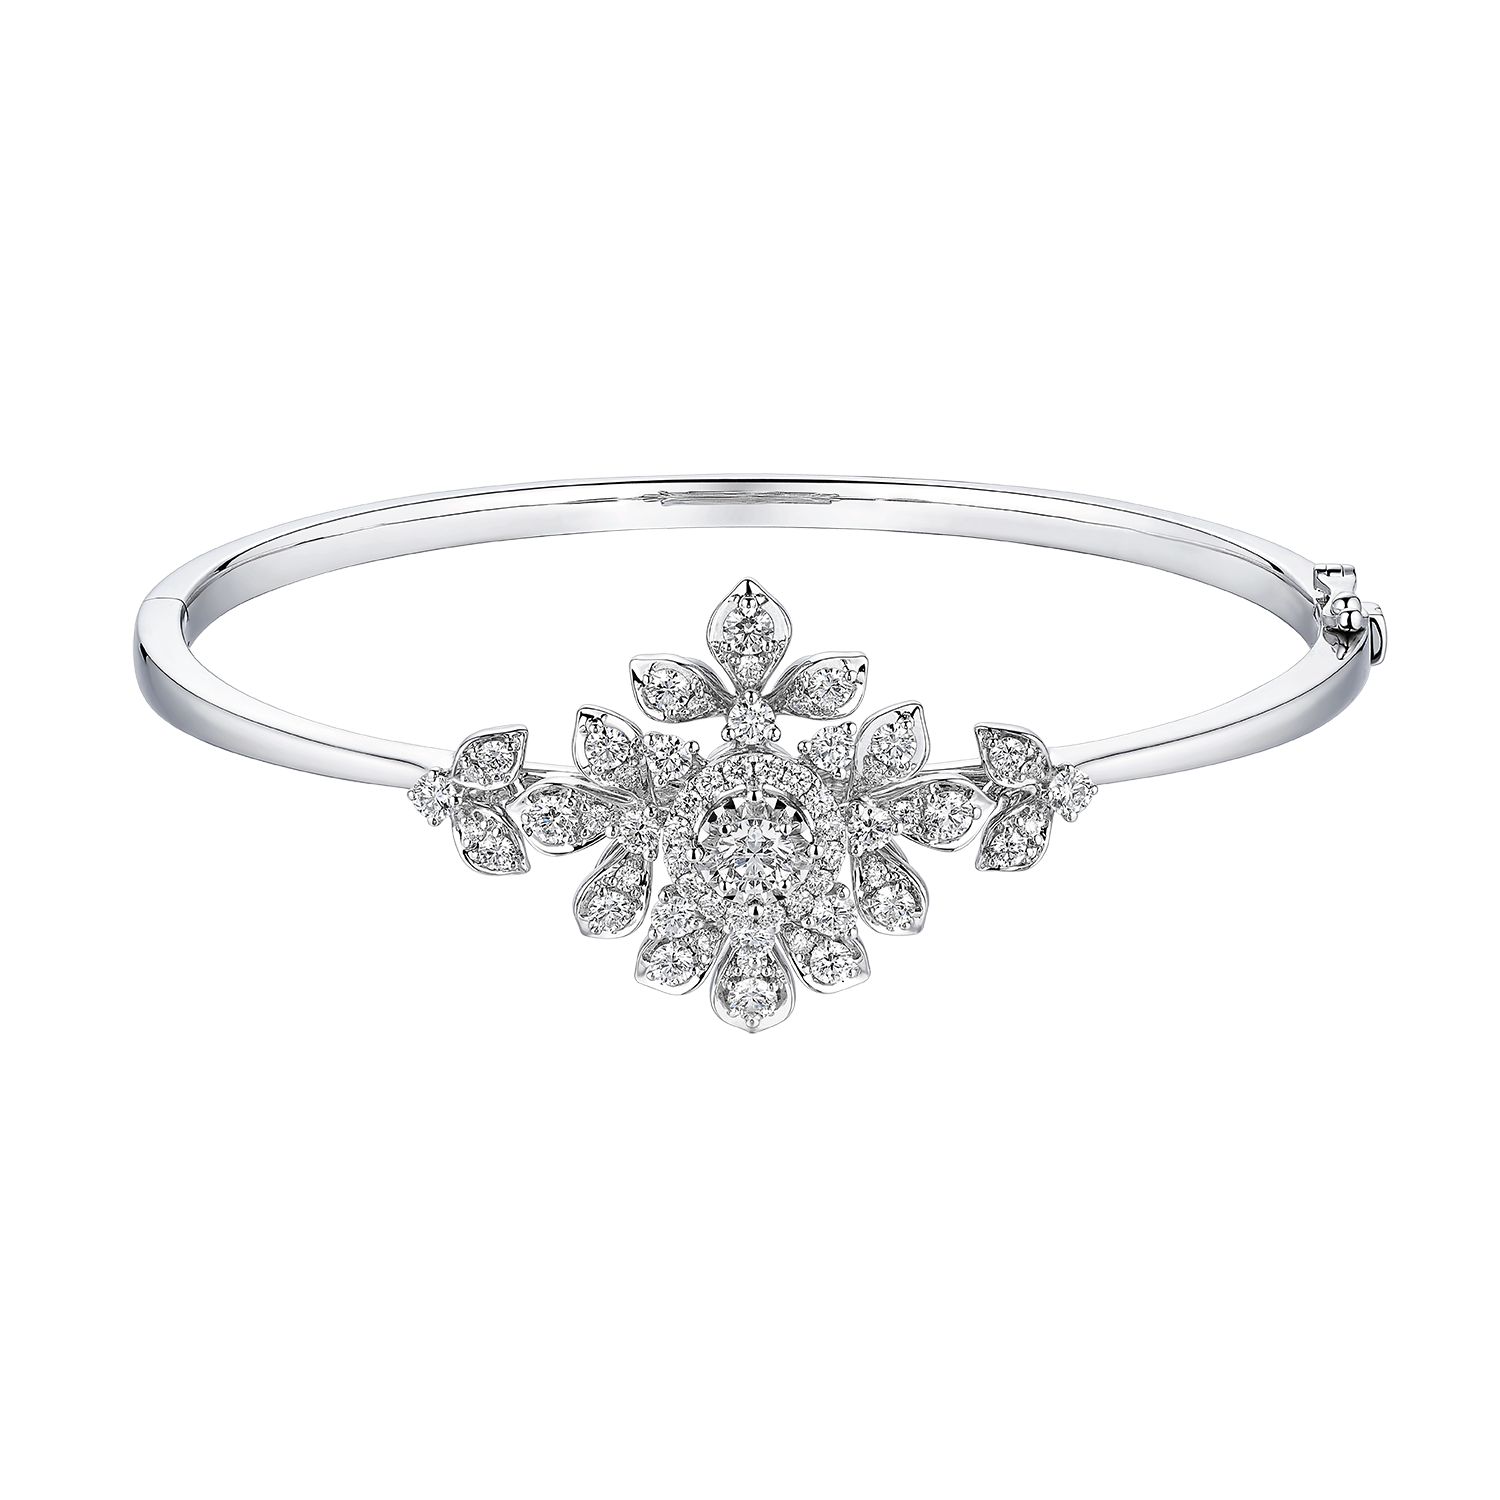 Wedding Collection "Enchanted Blossom" 18K Gold Diamond Bangle